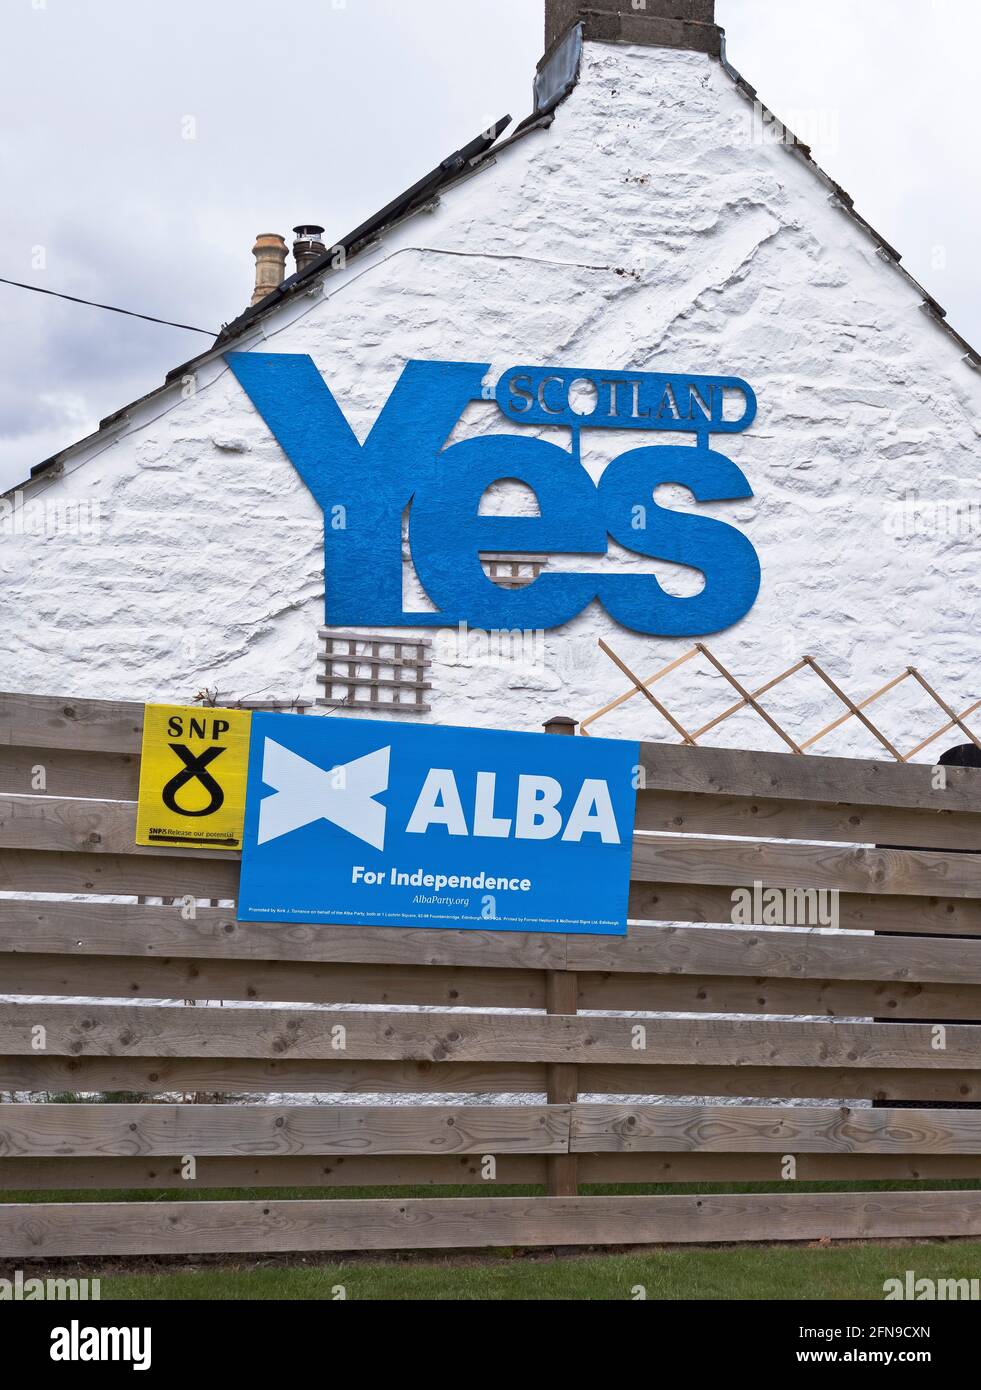 dh Scottish Independence SCOZIA UK Scottish YES sostenitori casa referendum sostenitori case campagna segnali di sostegno SNP logo Alba segno politica Foto Stock